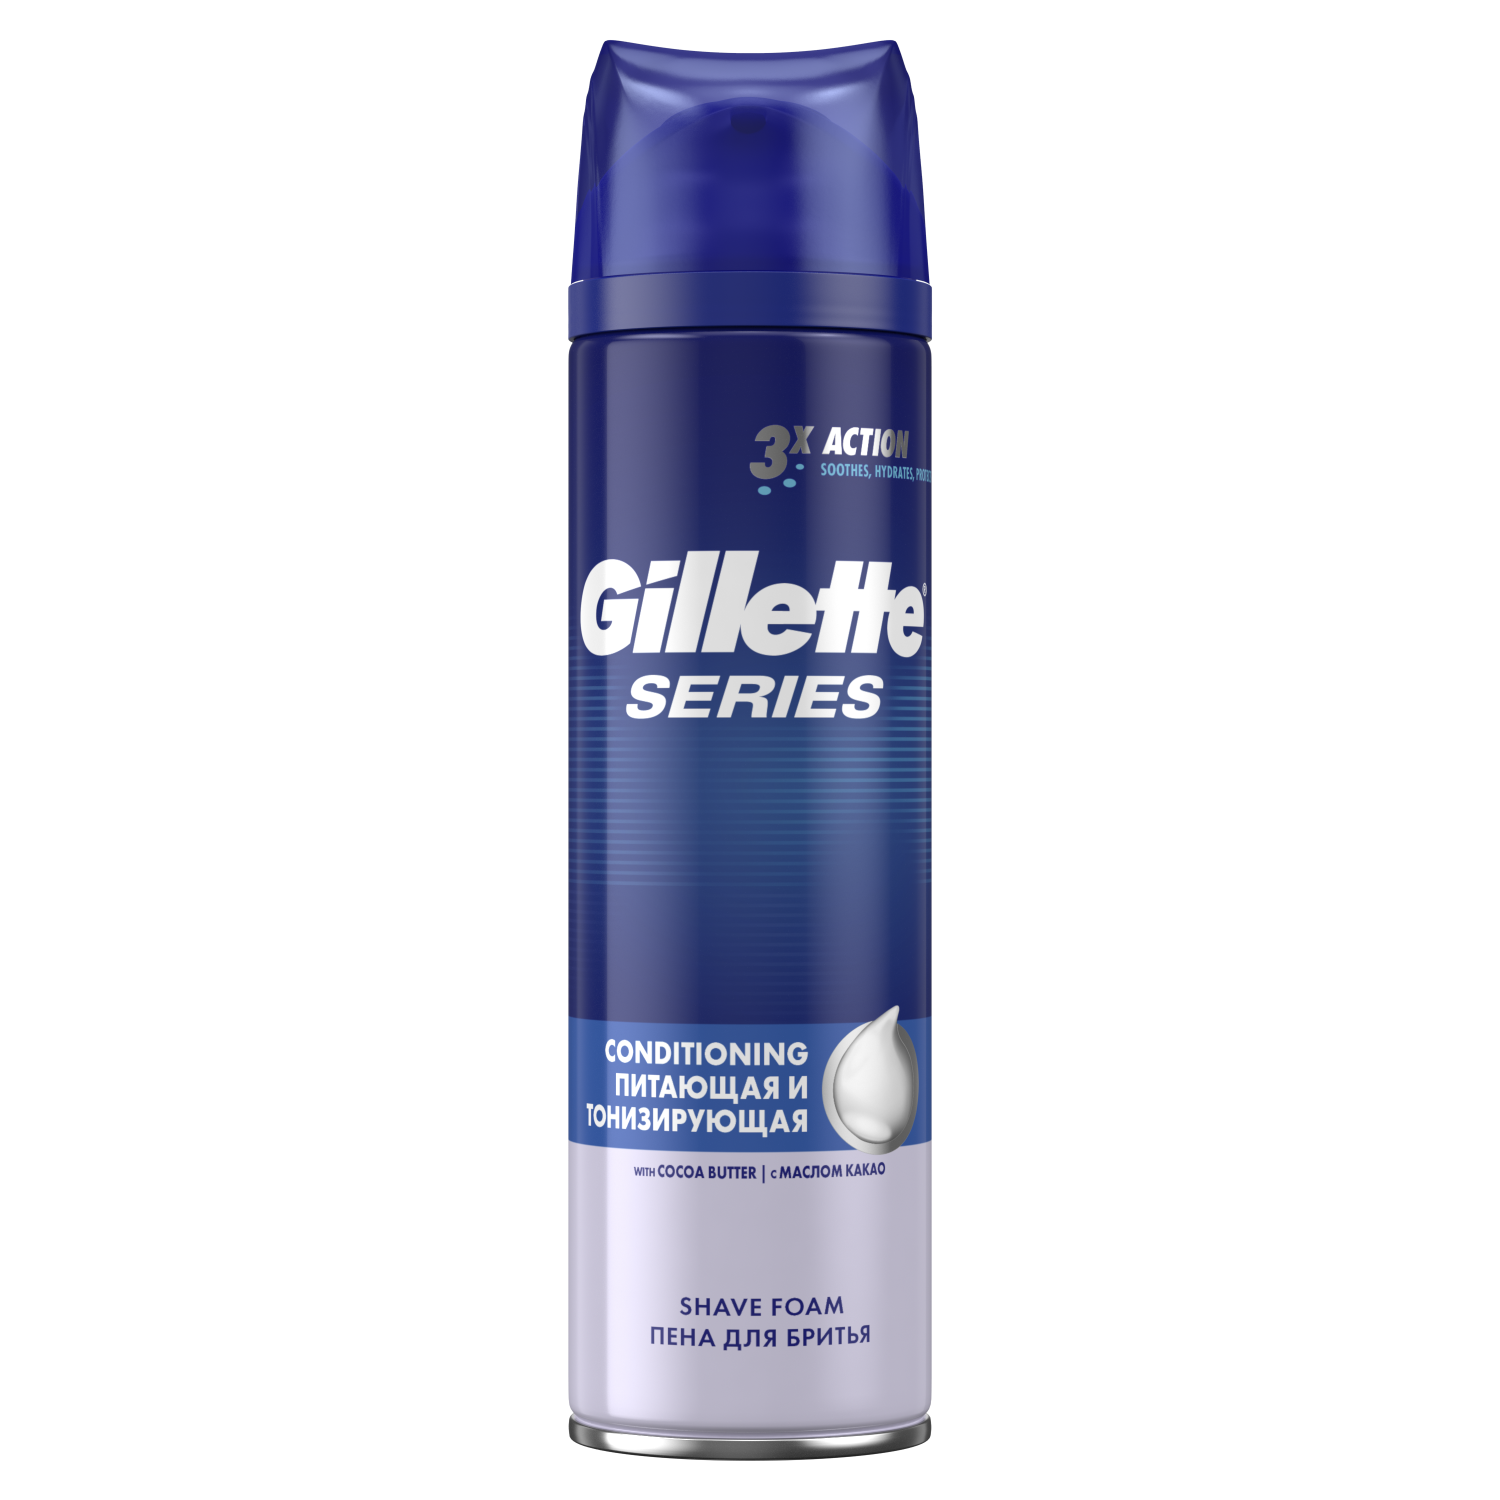 Пена для бритья Gillette Series Питающая и тонизирующая 250 мл - отзывыпокупателей на Мегамаркет